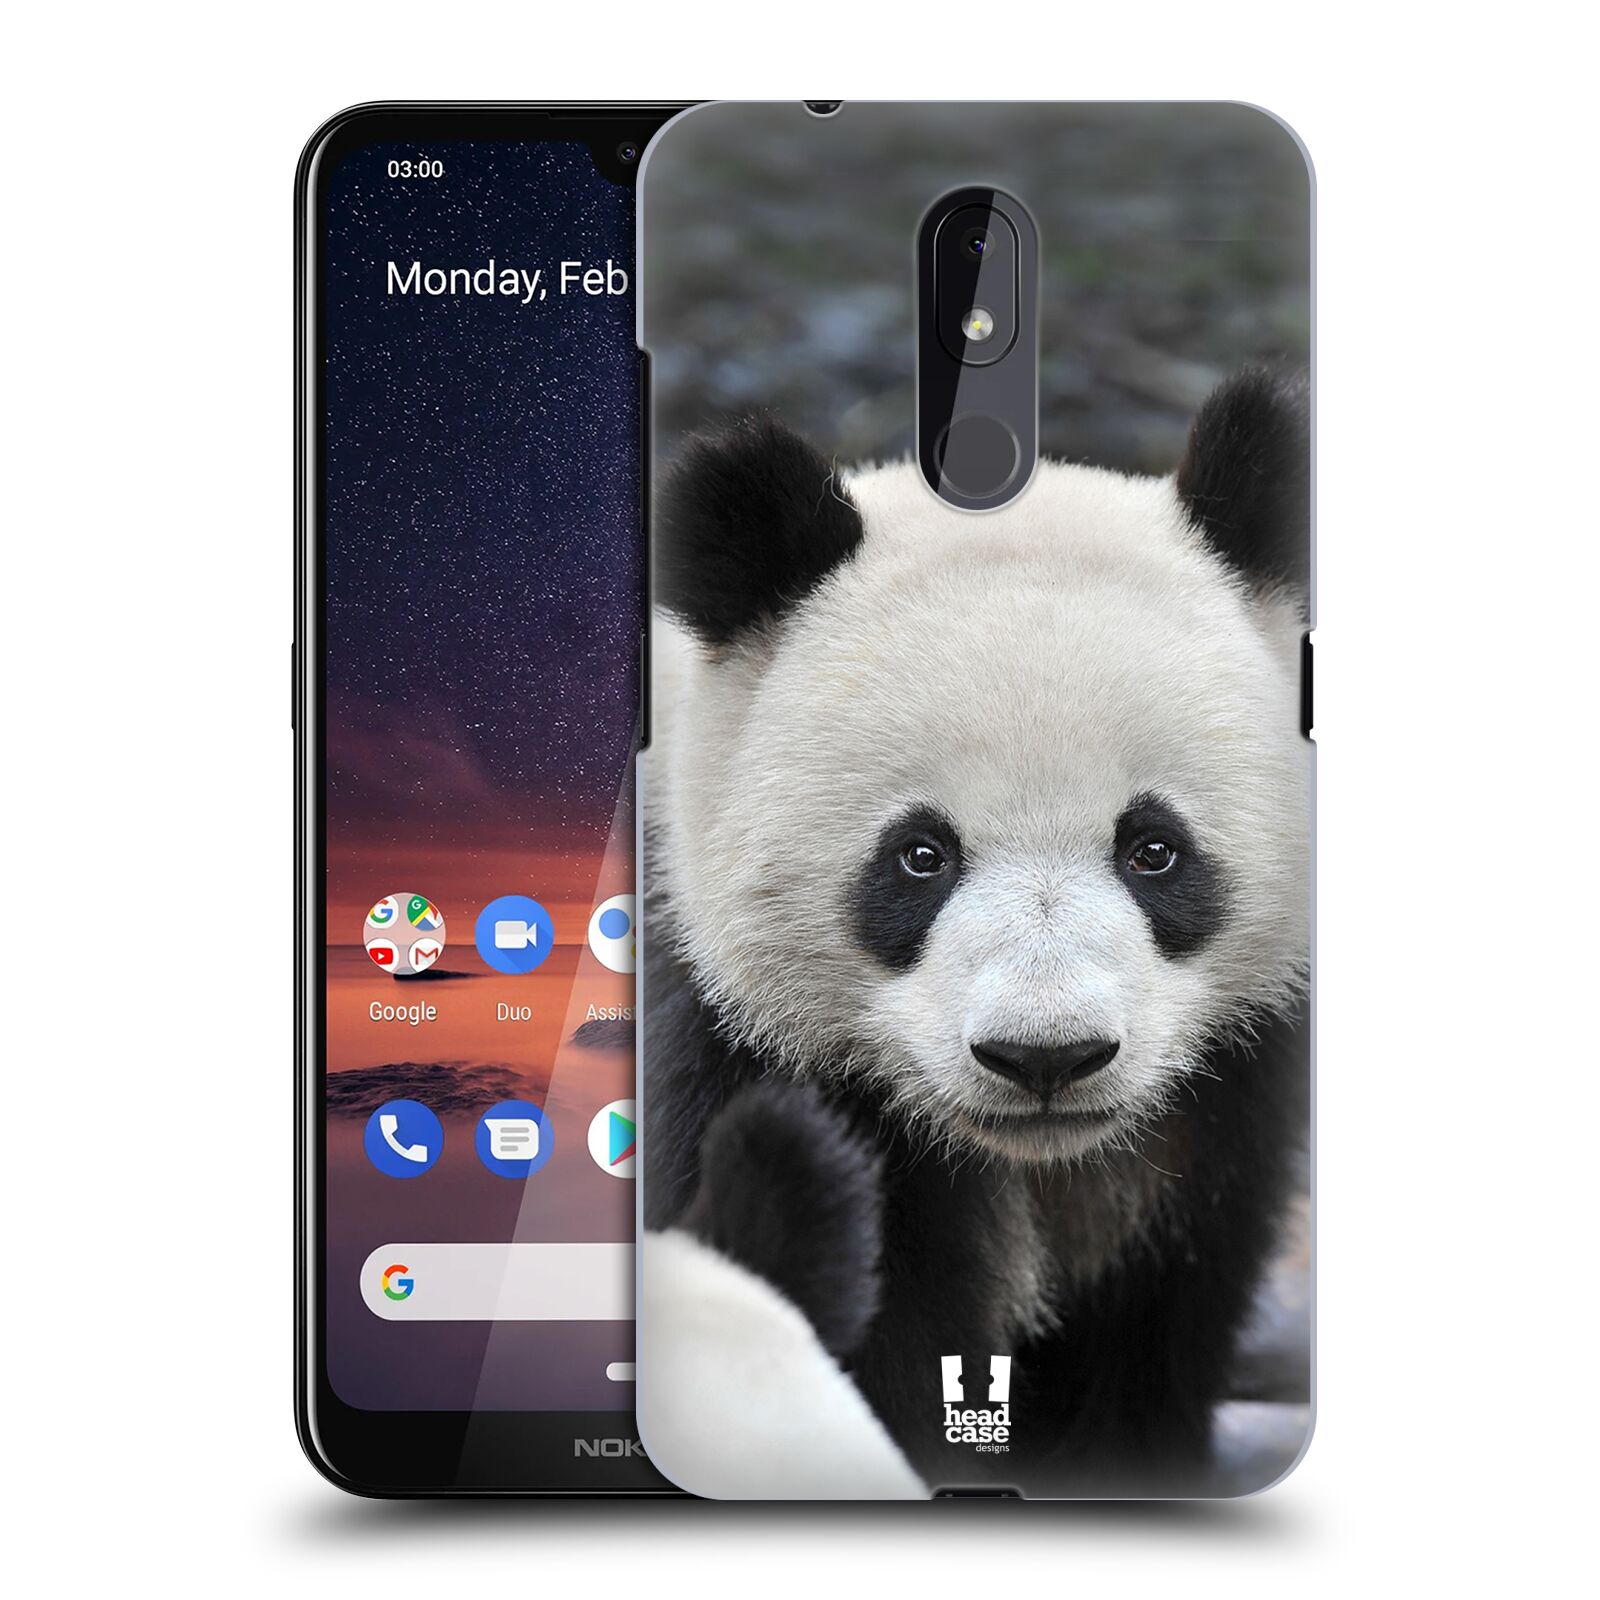 Pouzdro na mobil Nokia 3.2 - HEAD CASE - vzor Divočina, Divoký život a zvířata foto MEDVĚD PANDA